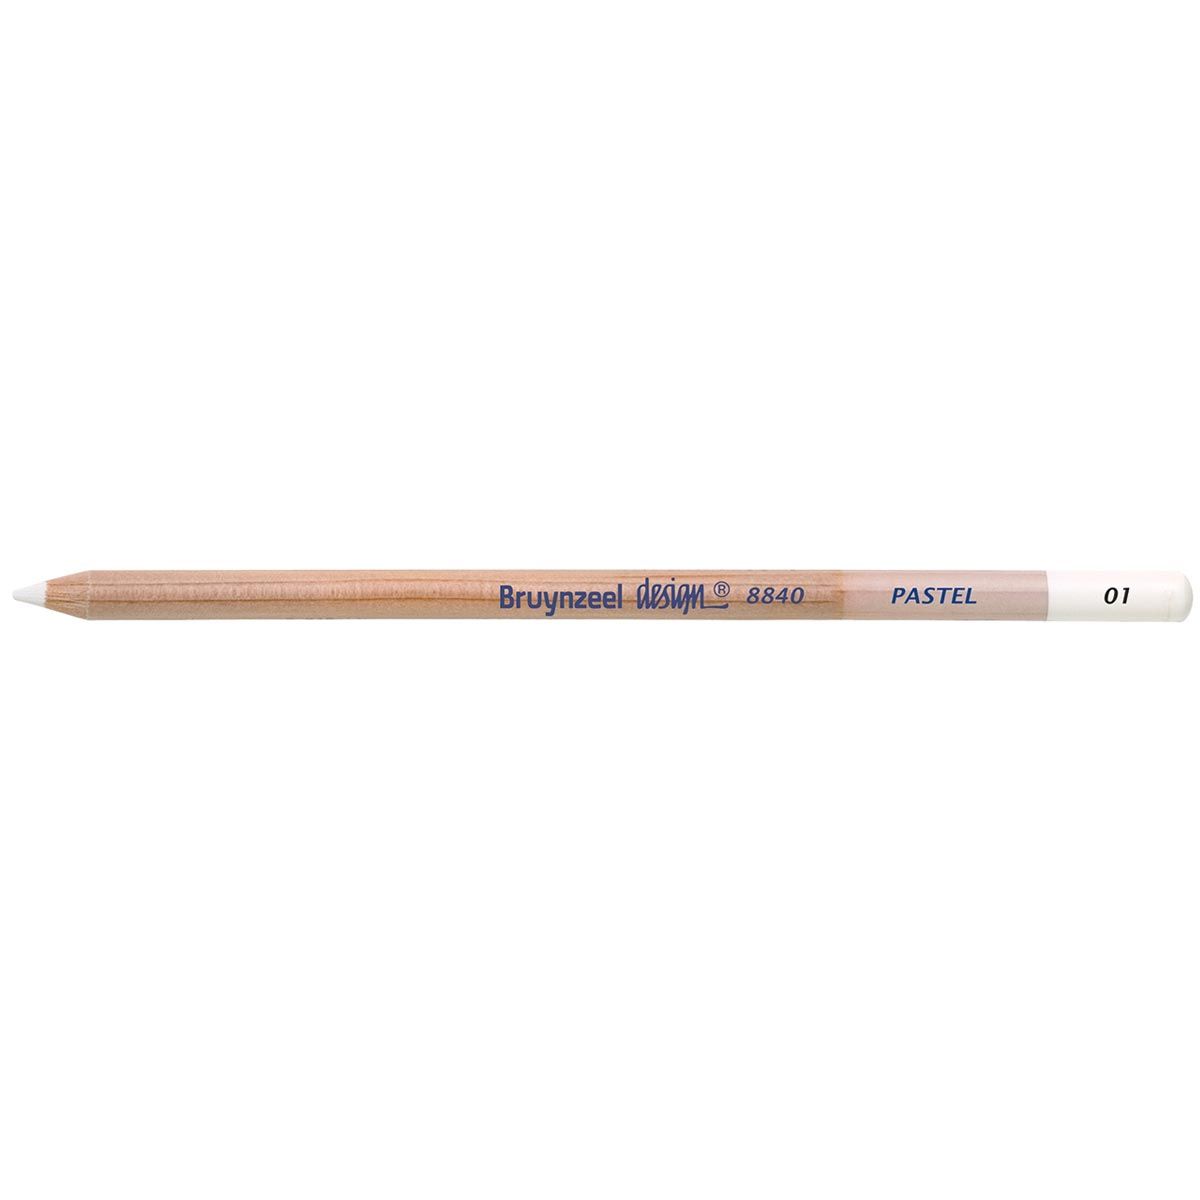 Bruynzeel Design Pastel Pencil - White 01